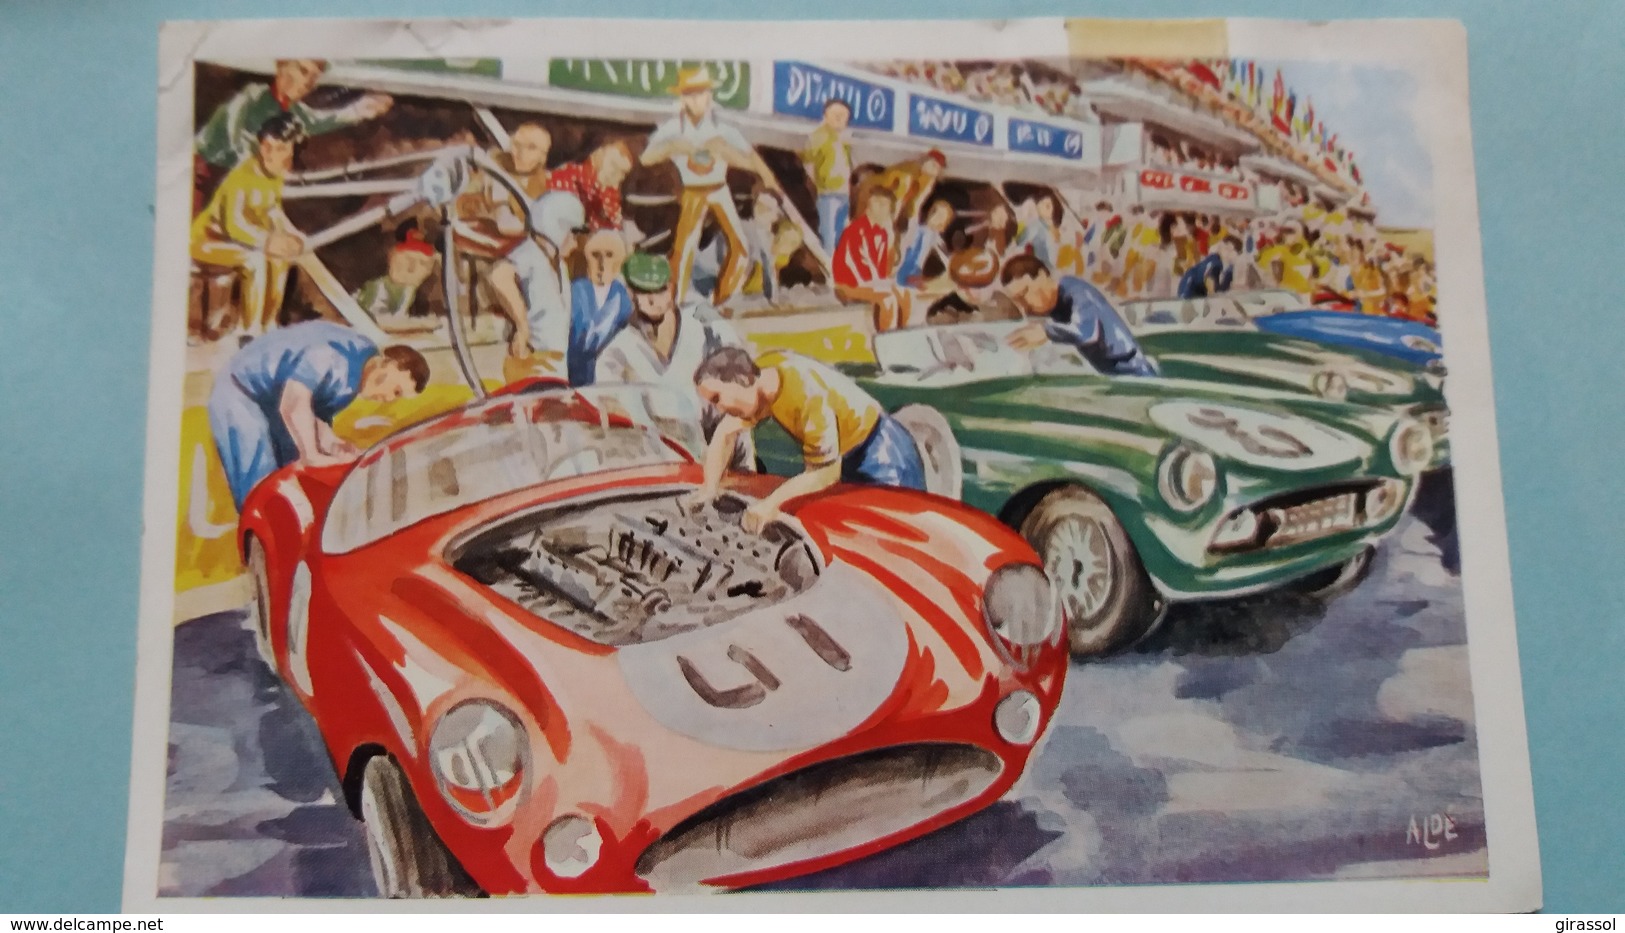 CPSM LE MANS 24 HEURES SARTHE COURSE AUTOMOBILE DERNIERS PREPARATIFS AVANT LE DEPART MUTUELLE INCENDIE 1966 - Le Mans